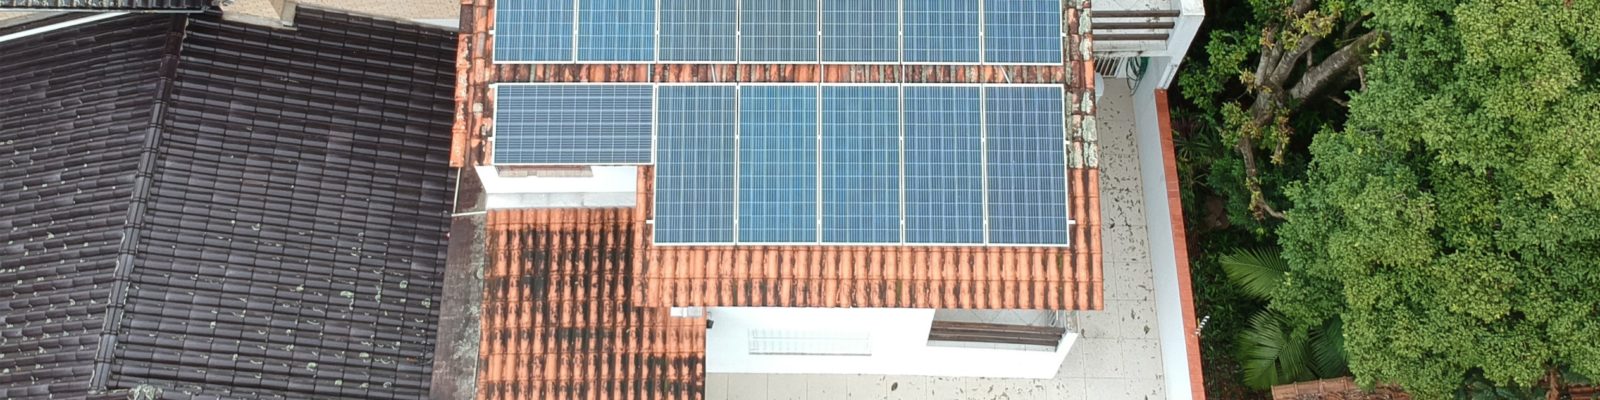 Sistema fotovoltaico residencial em Porto Alegre